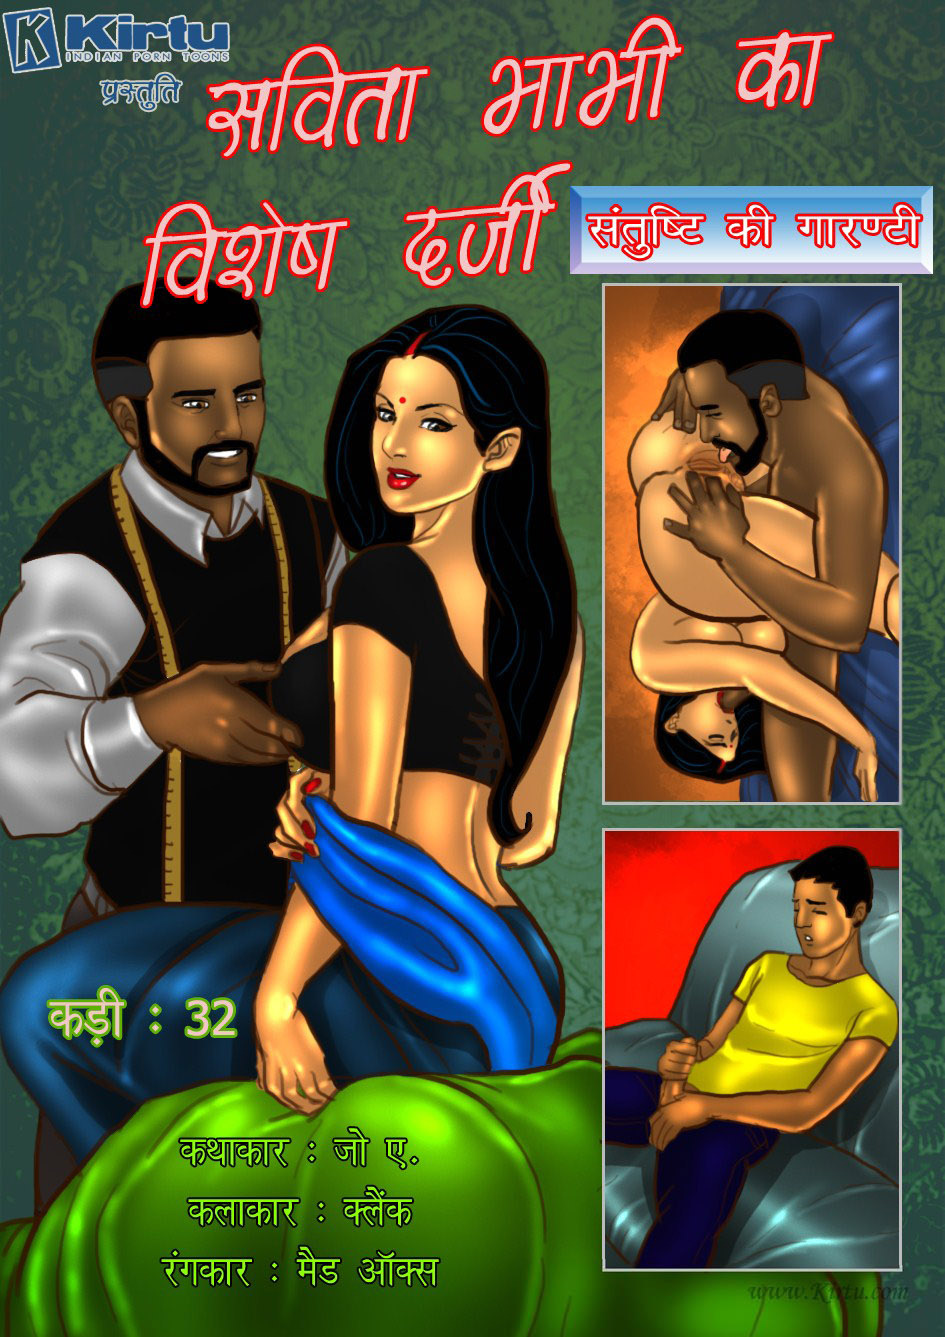 desi porn cartoons archives indian hot comics